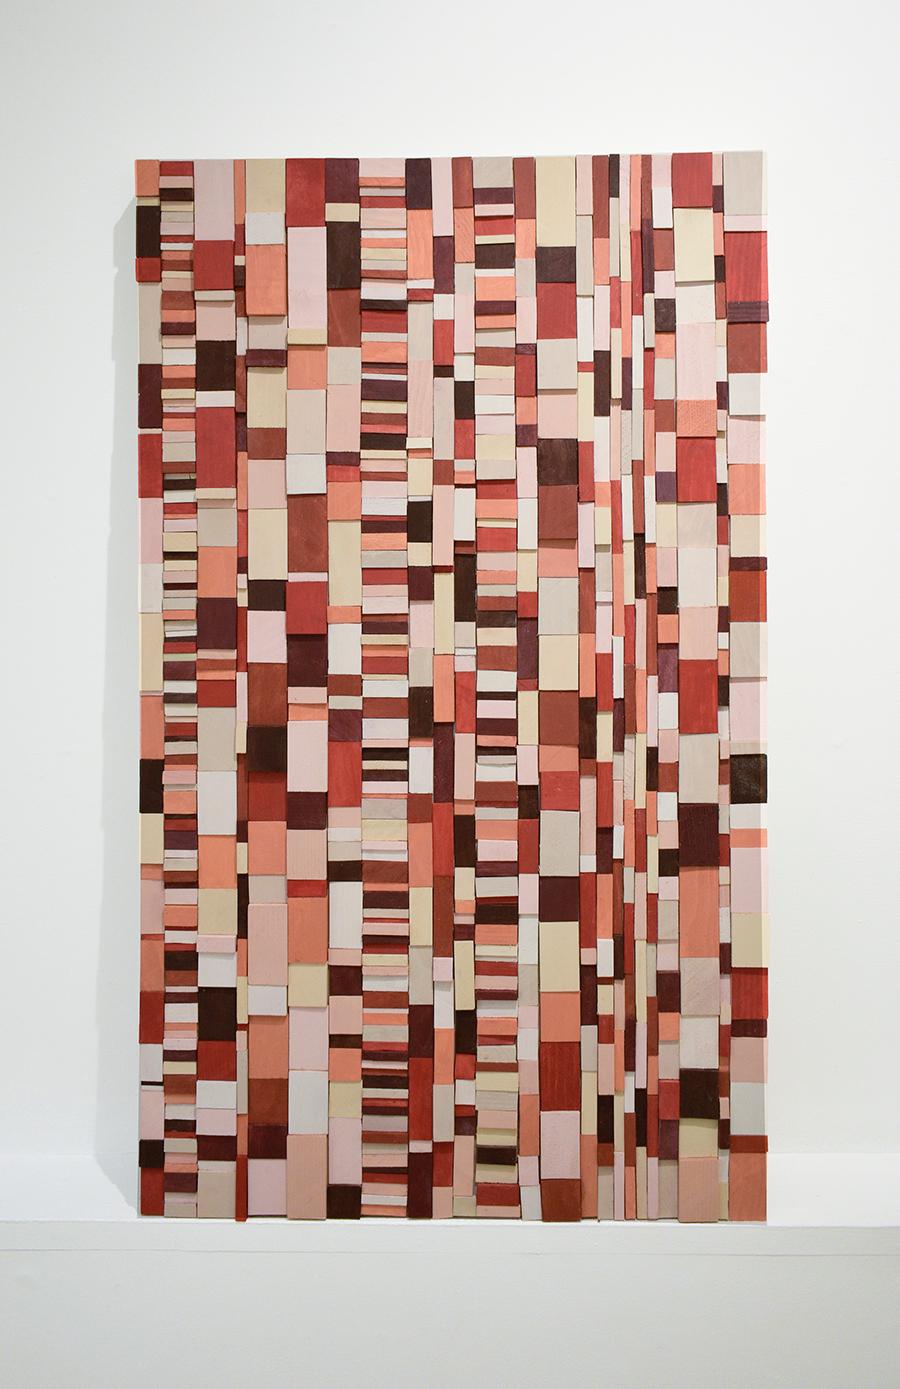 Abstrakte geometrische dreidimensionale Wandskulptur aus Holz in leuchtenden Rot-, Pfirsich-, Rosa-, Kastanienbraun-, Weiß- und Beigetönen
Pikante, handgeschnitzte hölzerne Wandskulptur des Künstlers Stephen Walling aus dem Hudson Valley,